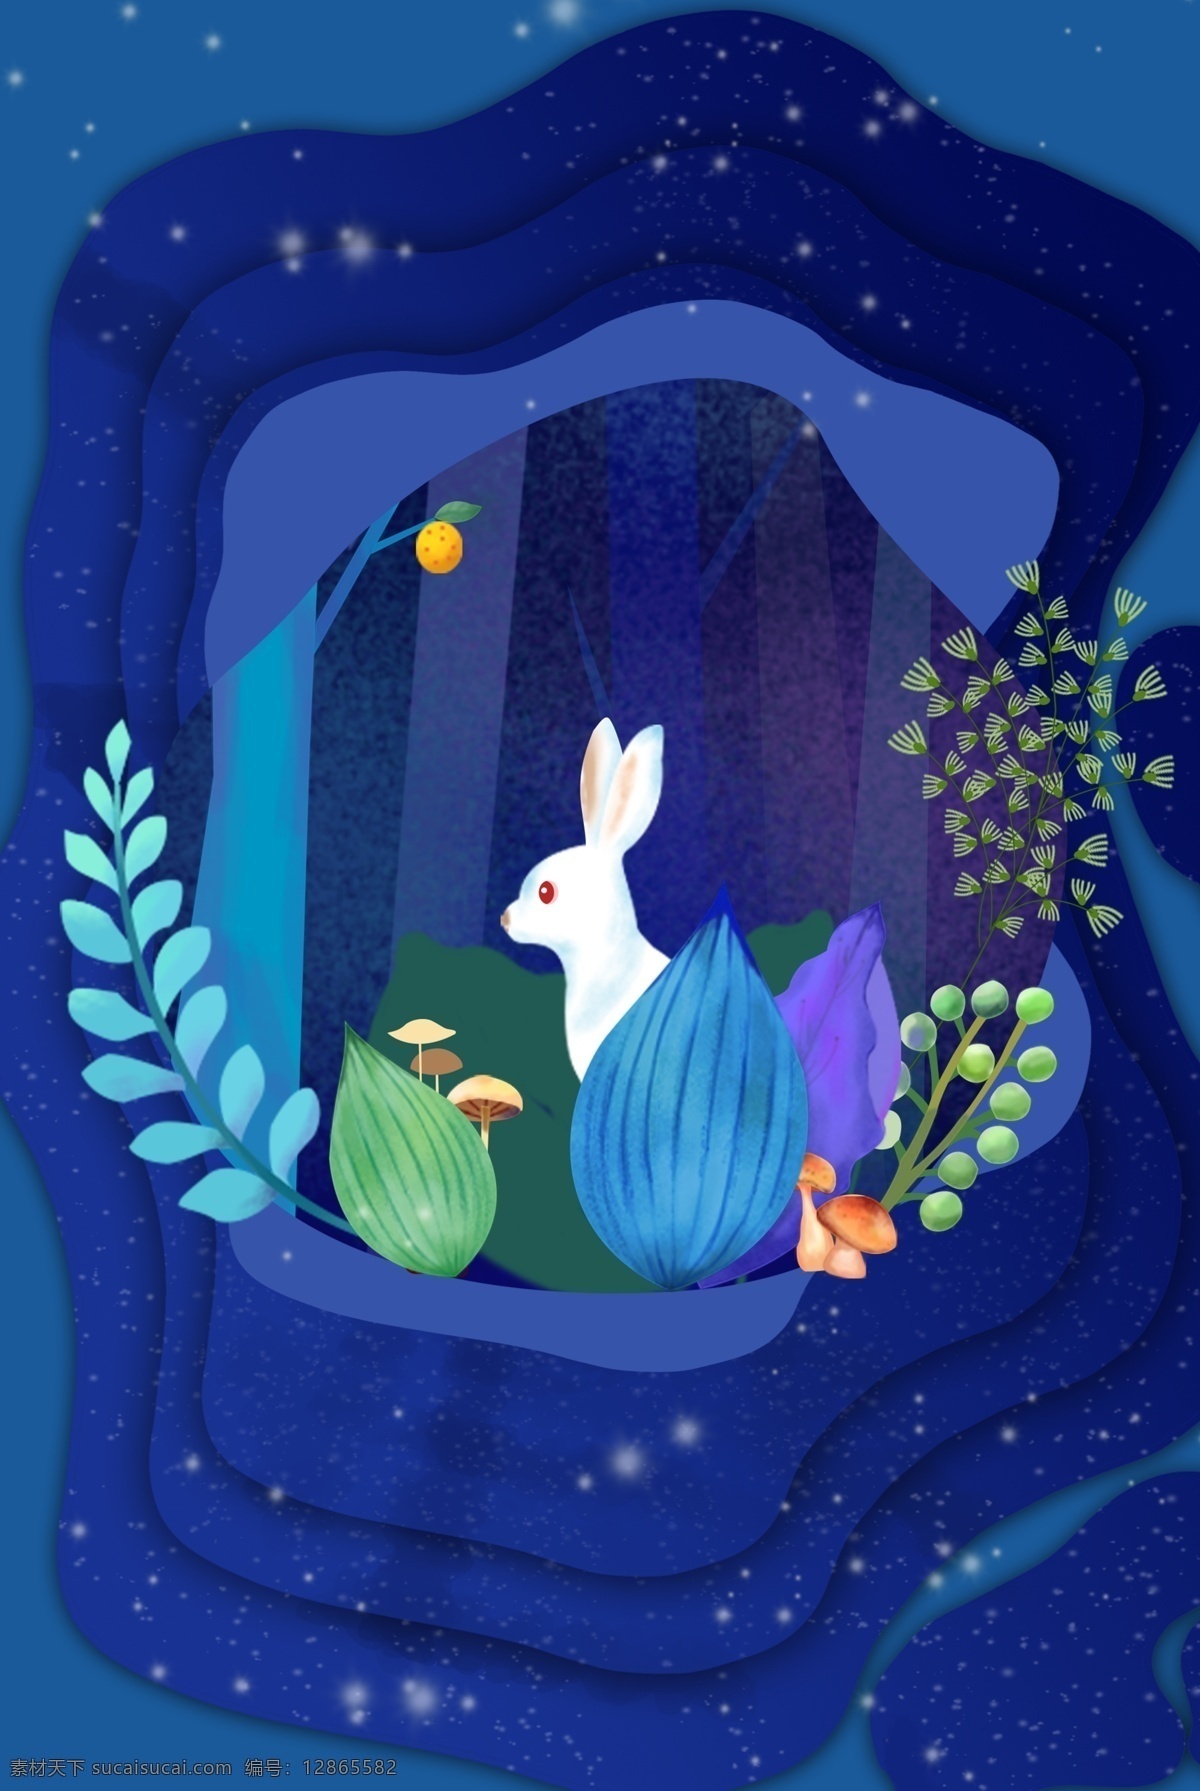 复活节 绿色植物 兔子 卡通 手绘 插画 树林 蘑菇 树叶 蓝紫色 静谧 夜晚 蓝色 立